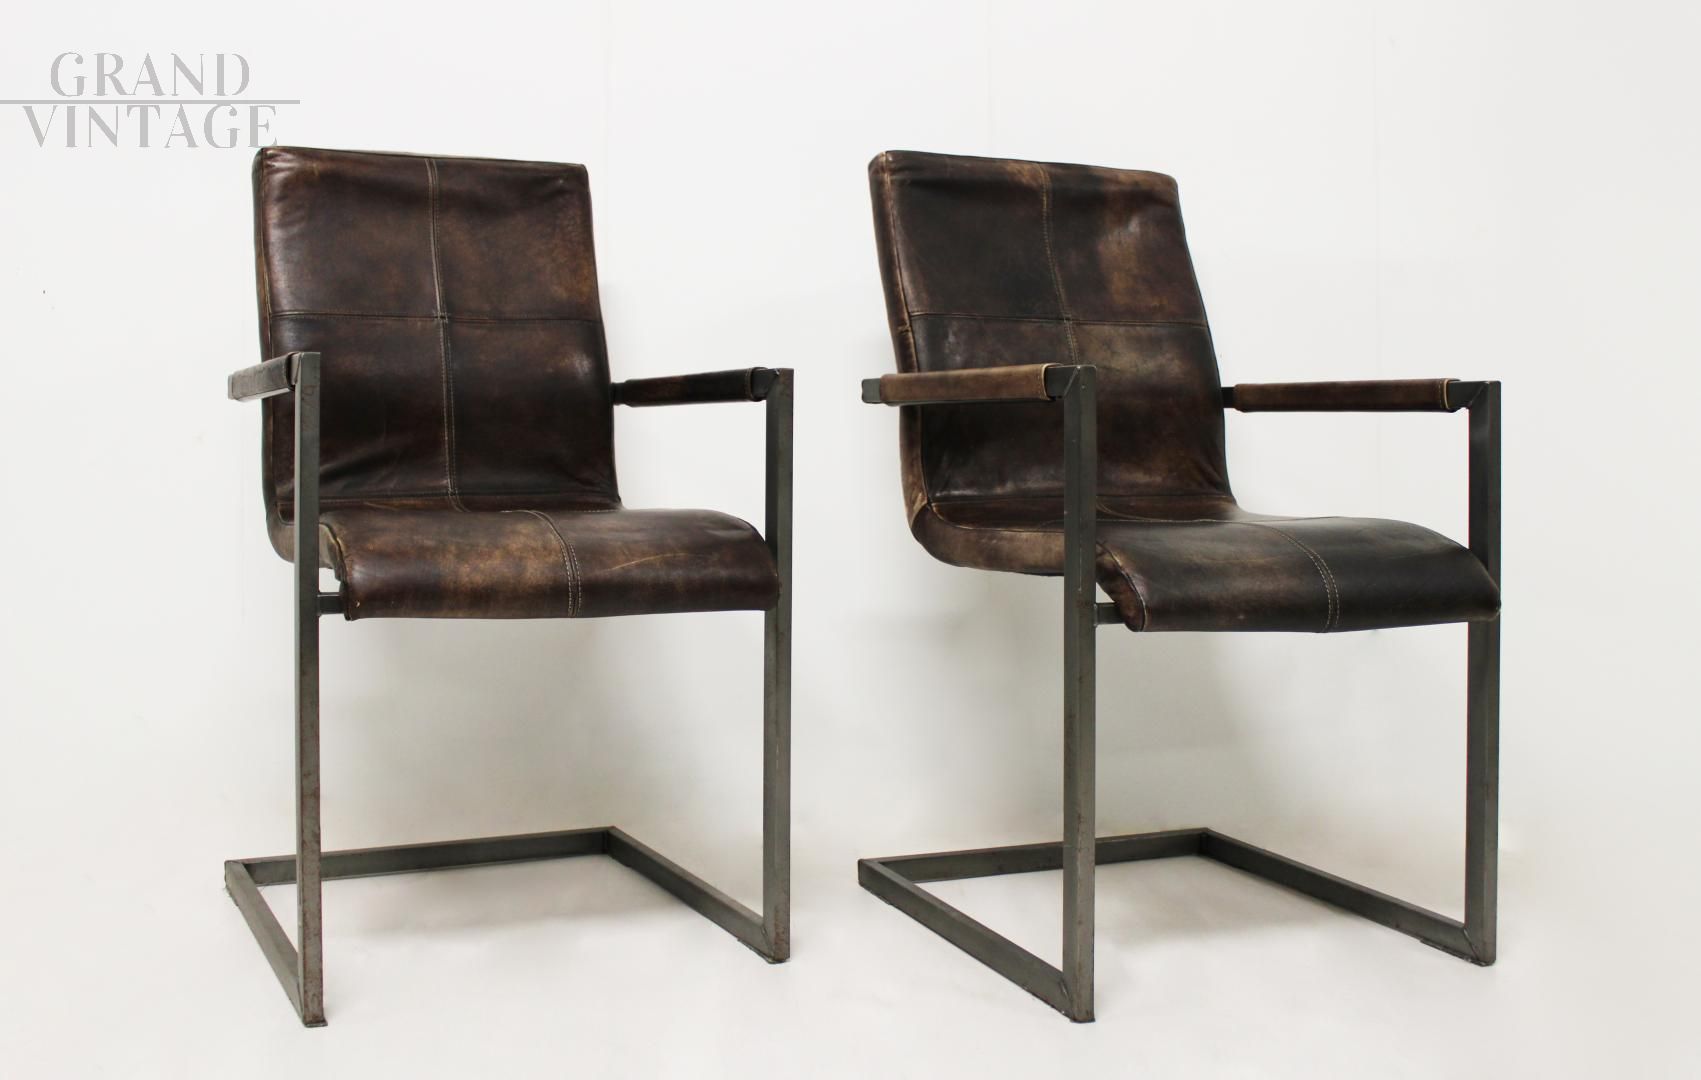 Coppia di sedie poltroncine cantilever stile vintage in pelle marrone